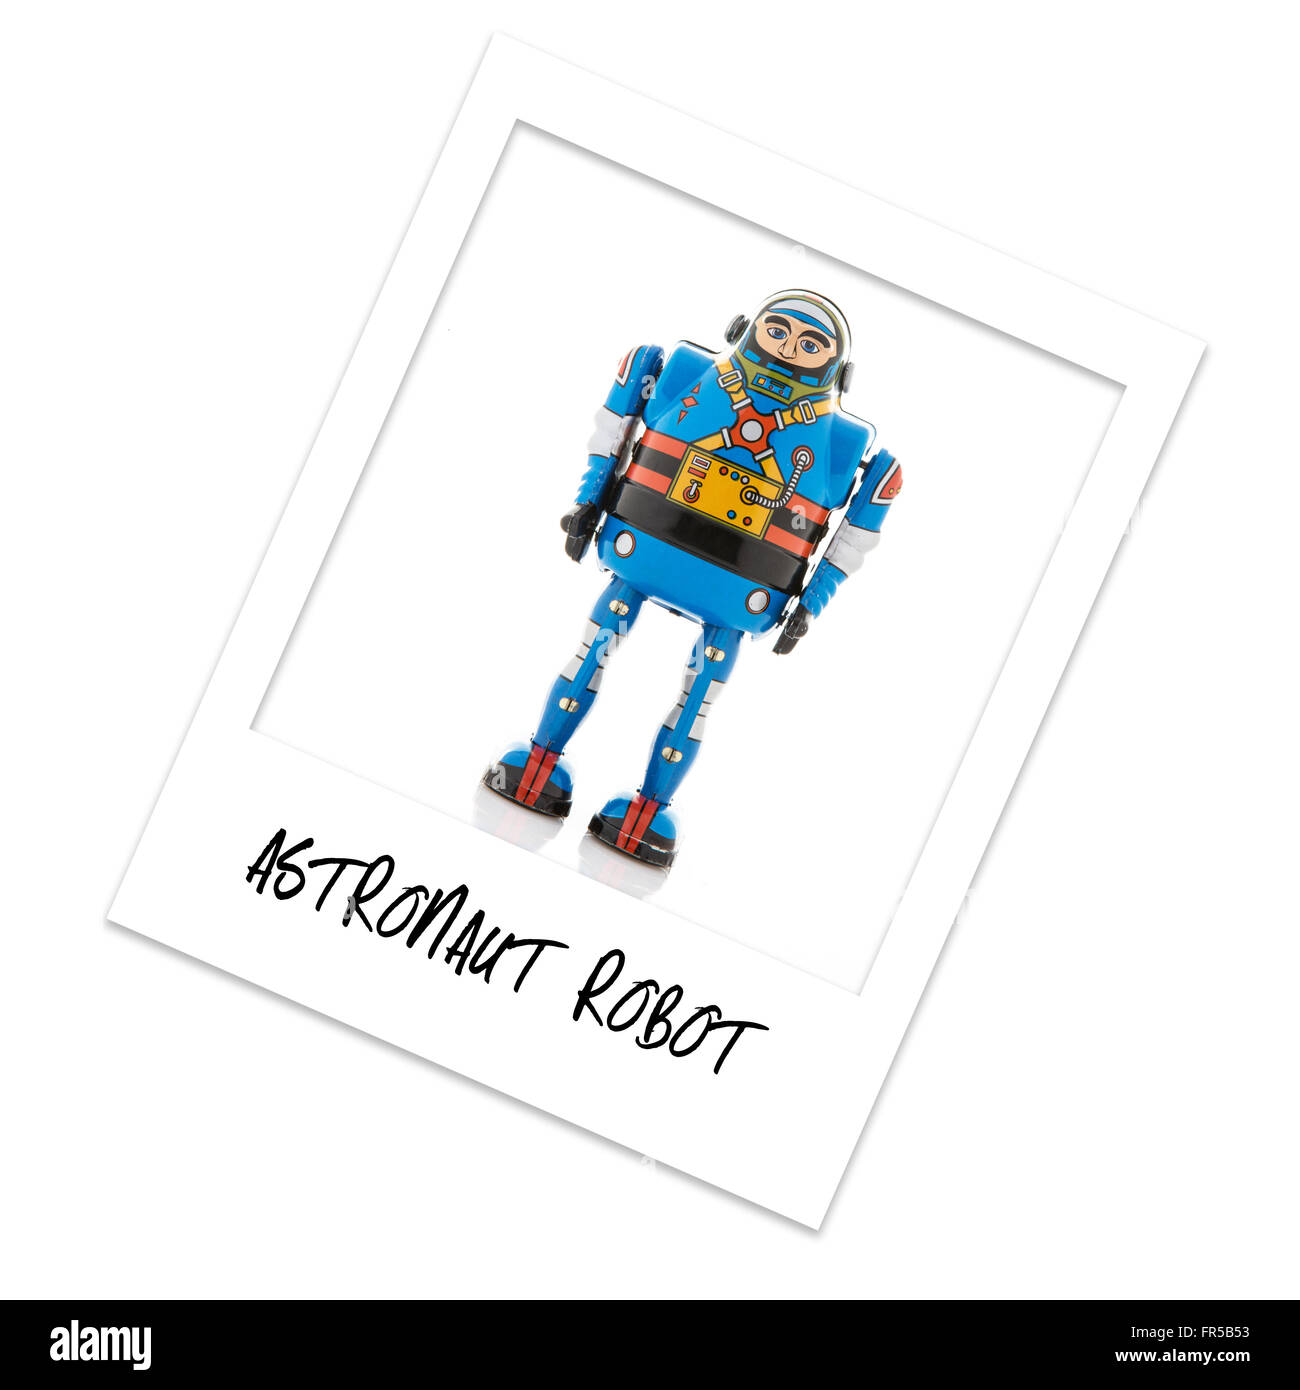 Polaroid Photo Astronaut Robot Stock Photo